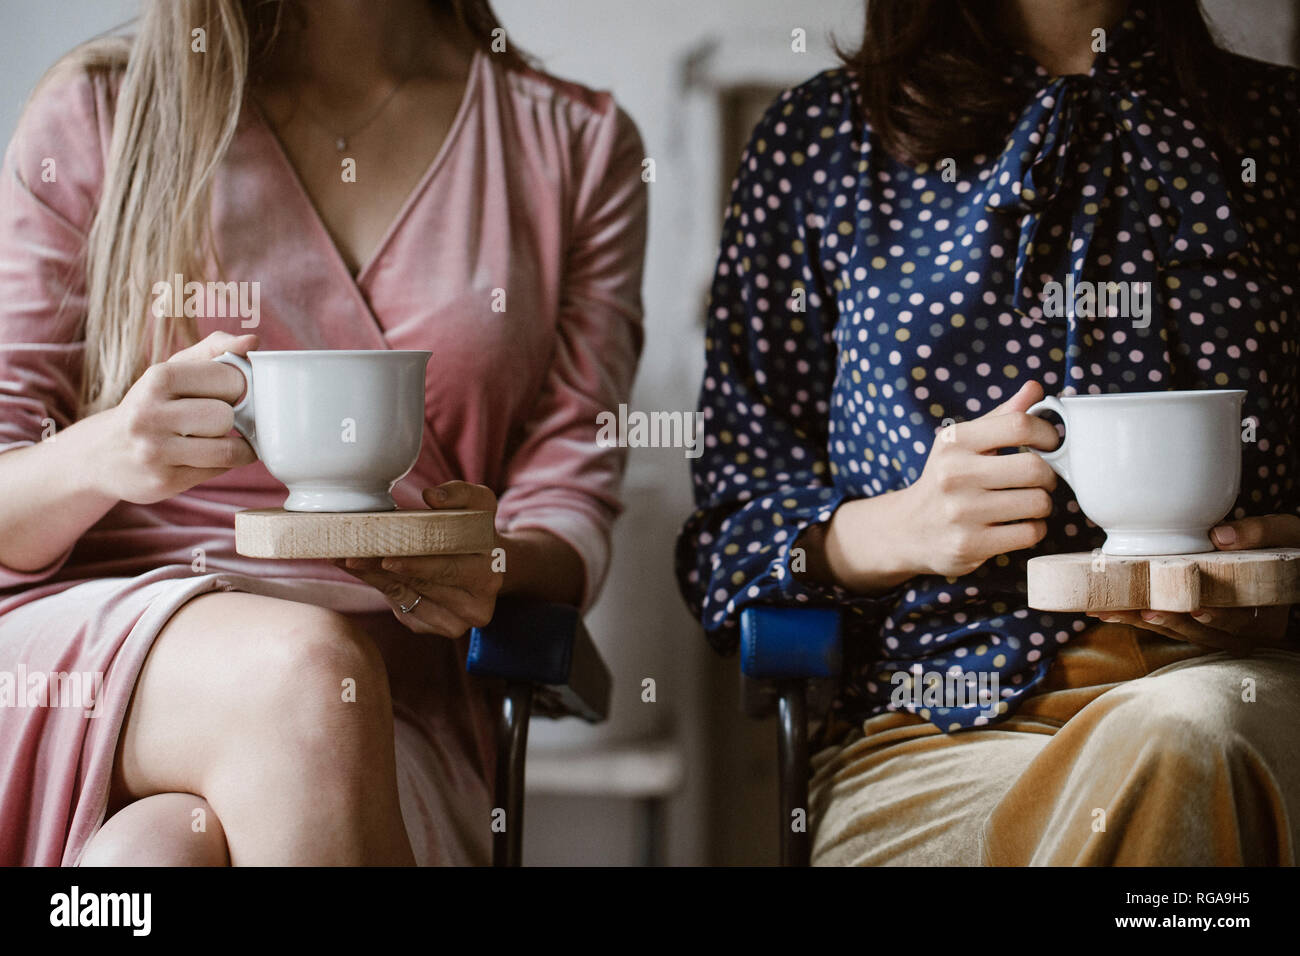 Deux femmes assises côte à côte avec des planches en tenant des tasses de thé blanc, vue partielle Banque D'Images